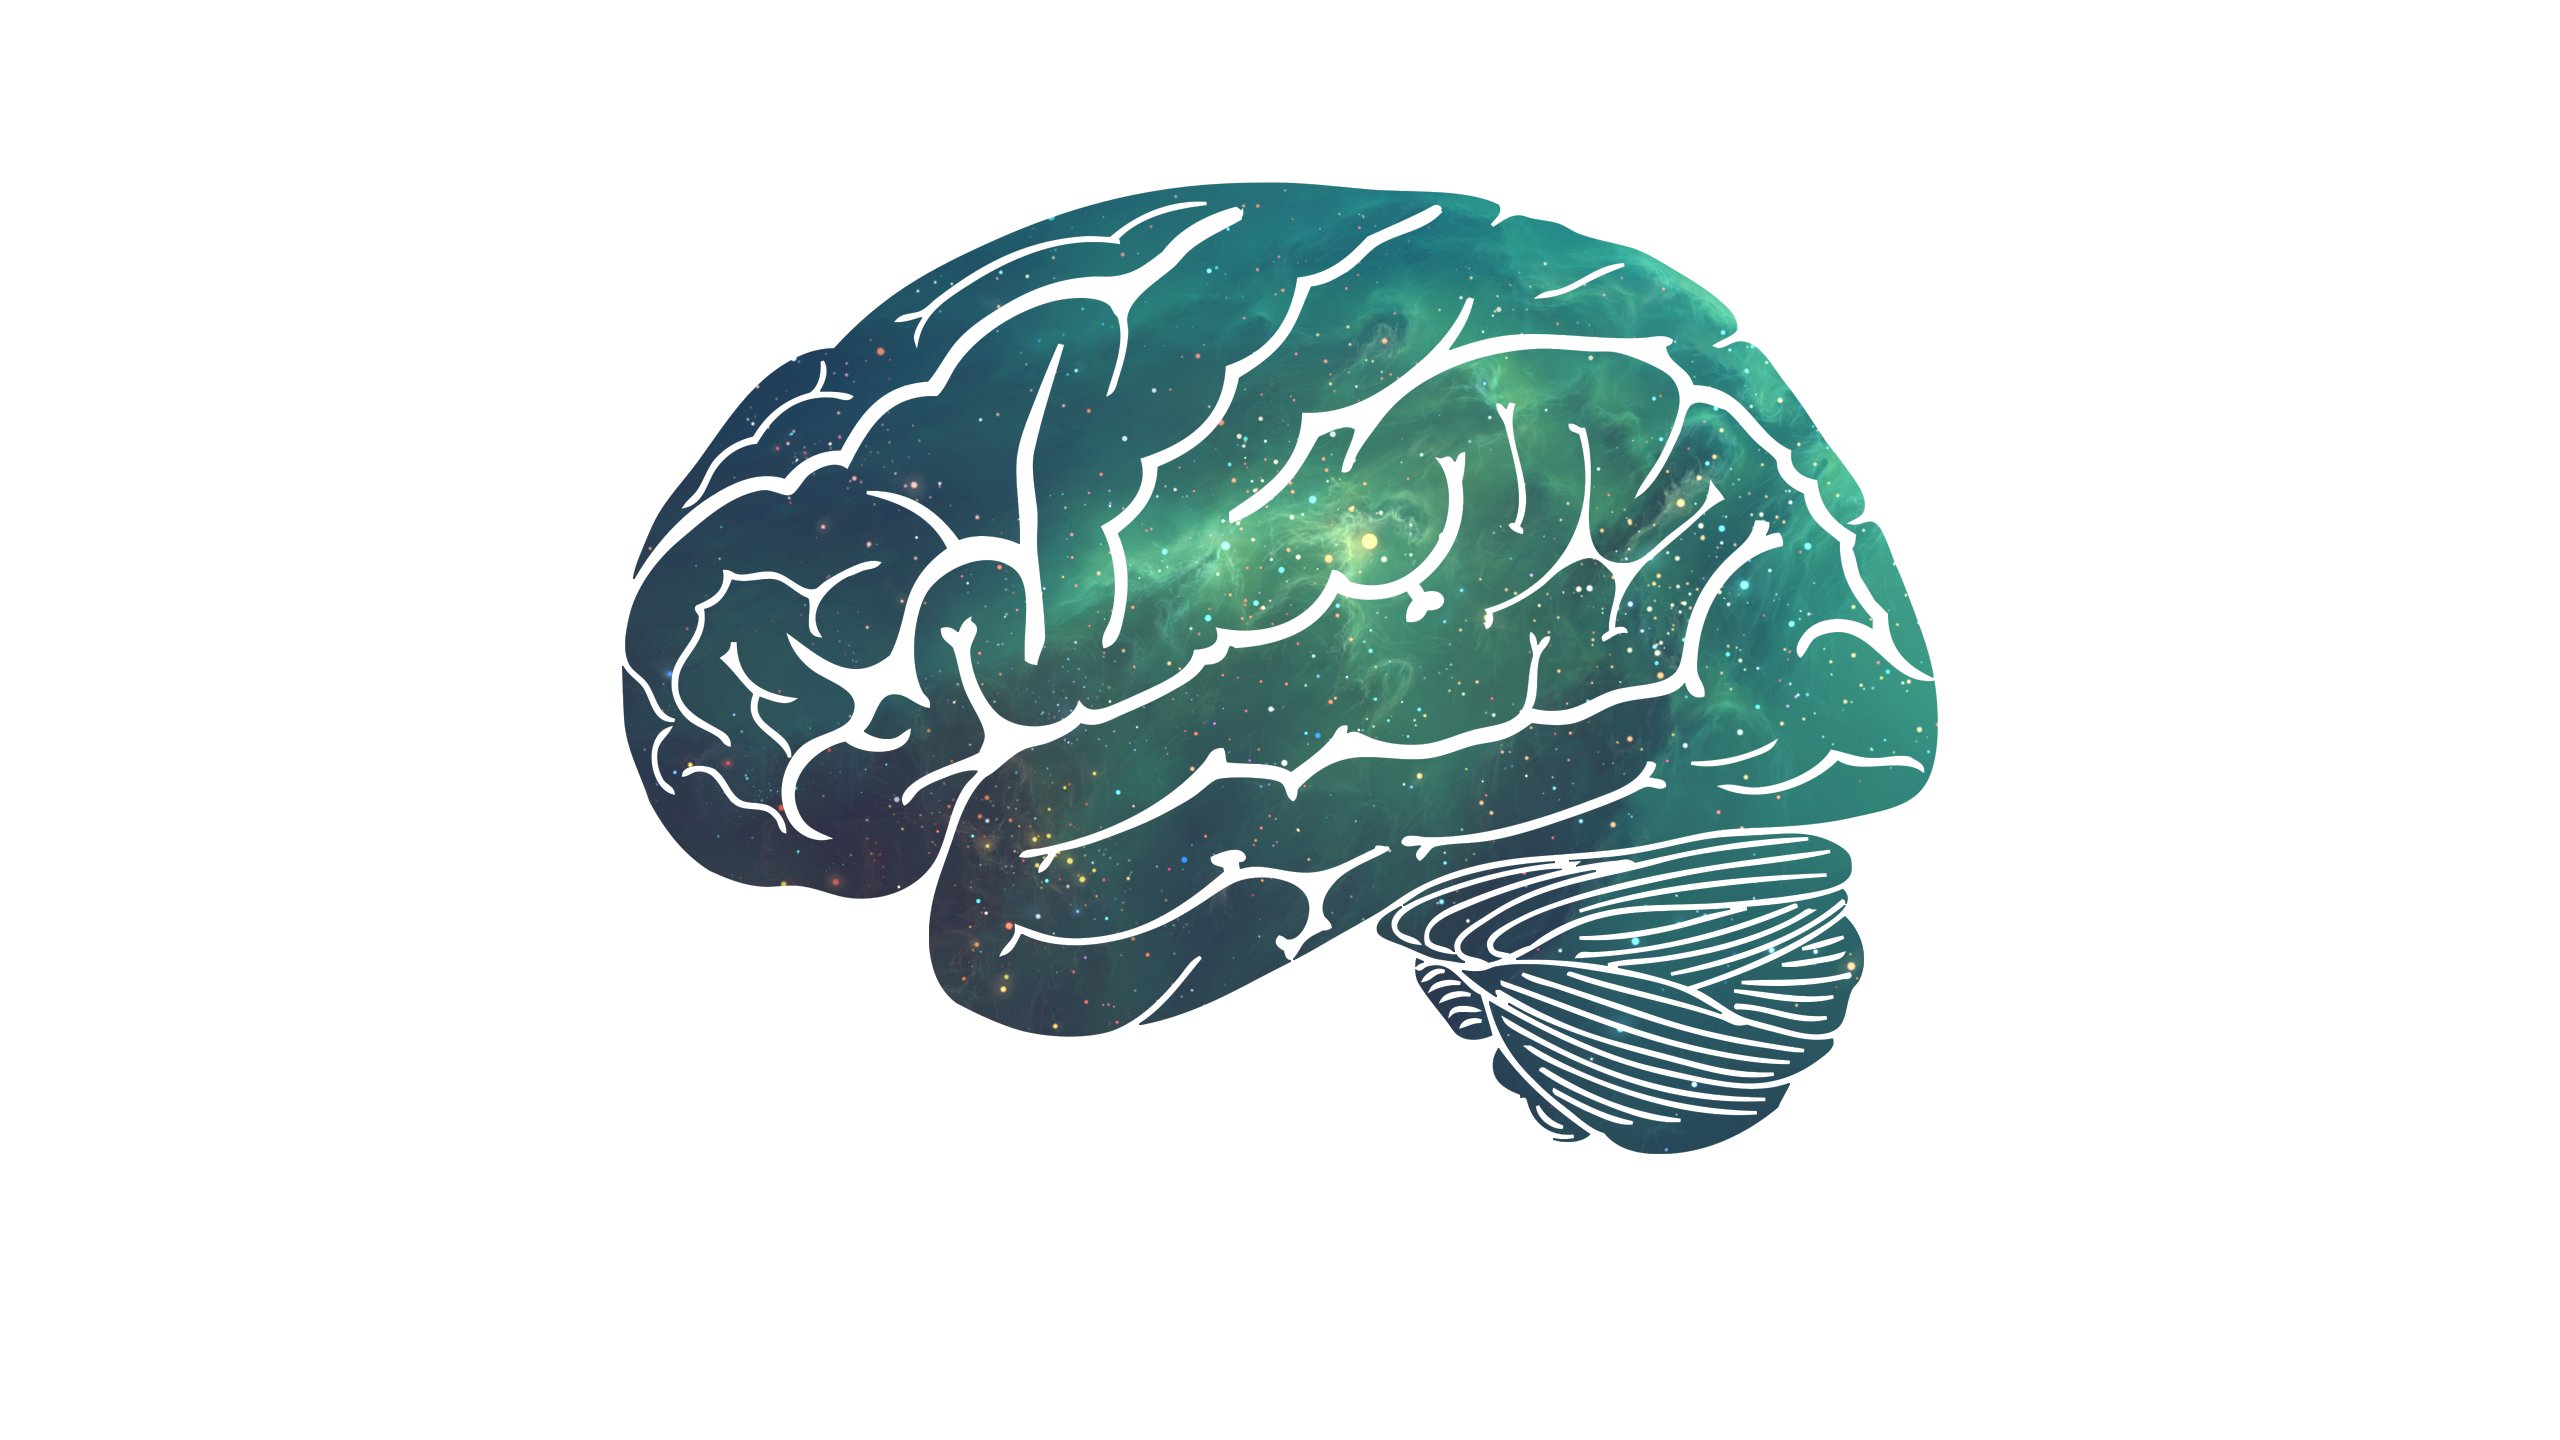 Space Brain Wallpaper - Brain Aesthetic - HD Wallpaper 